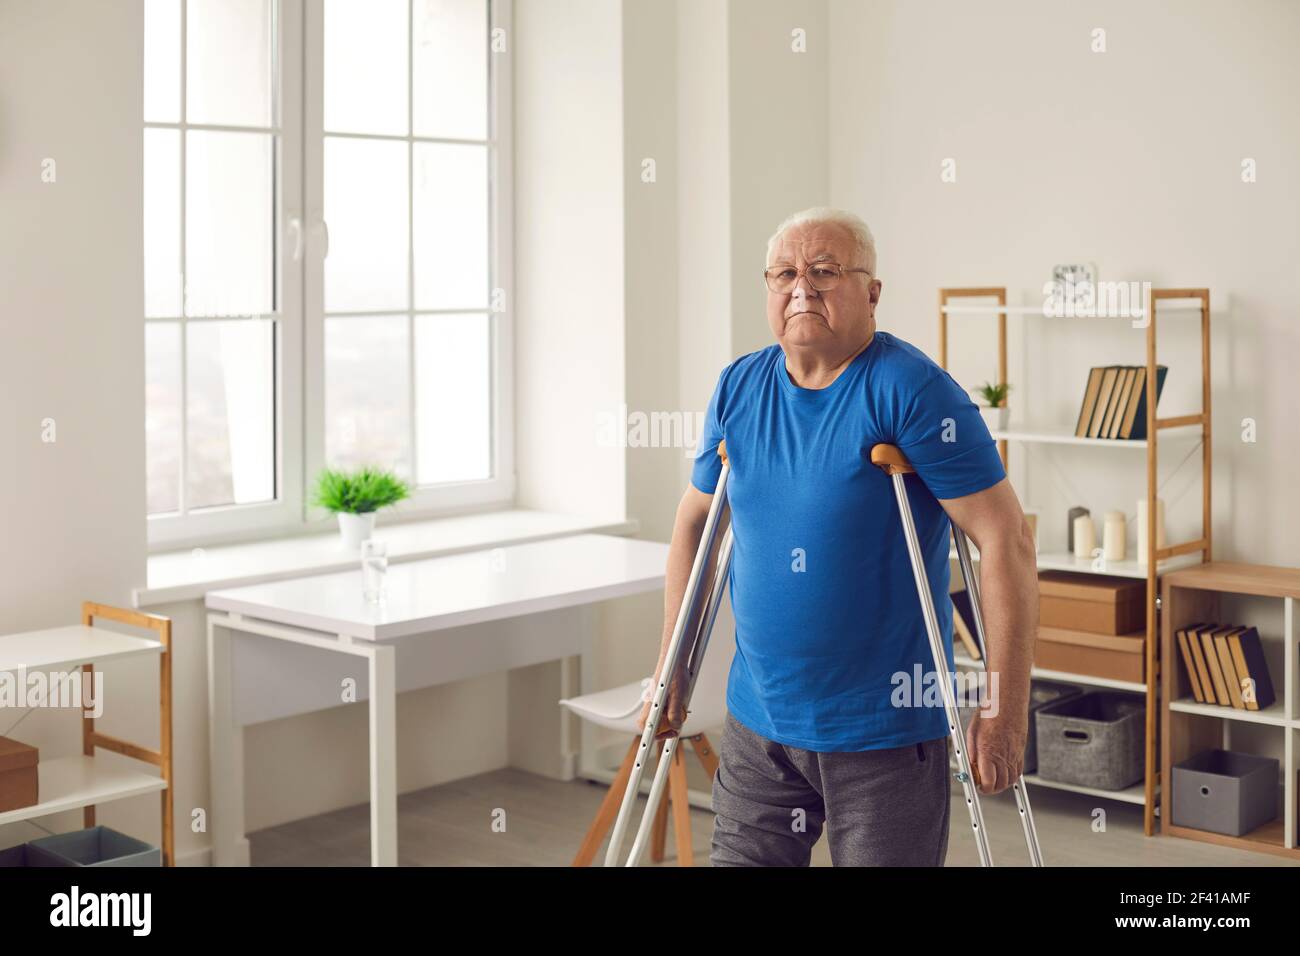 Ältere Person mit gebrochenem Bein oder körperlicher Behinderung beim Gehen mit Krücken zu Hause Stockfoto